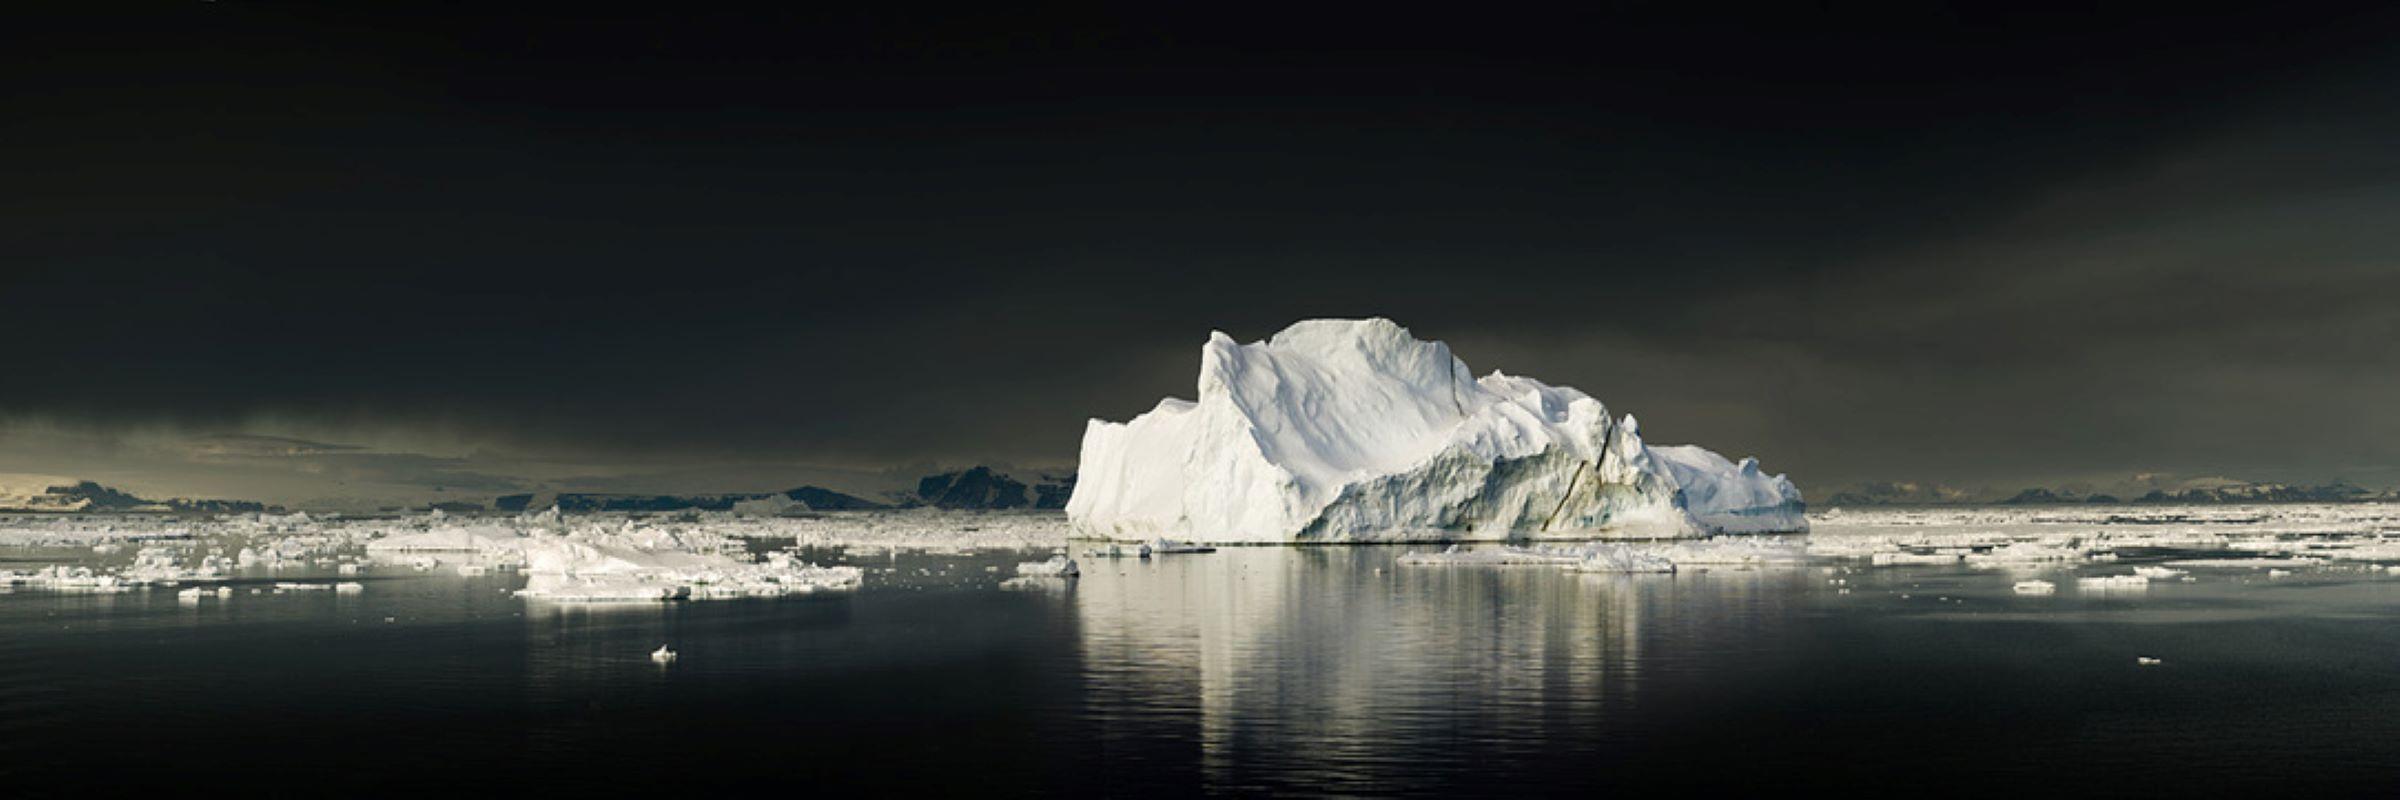 David Burdeny - Weddell Sea Entrance, Antarctica, 2020, Printed After